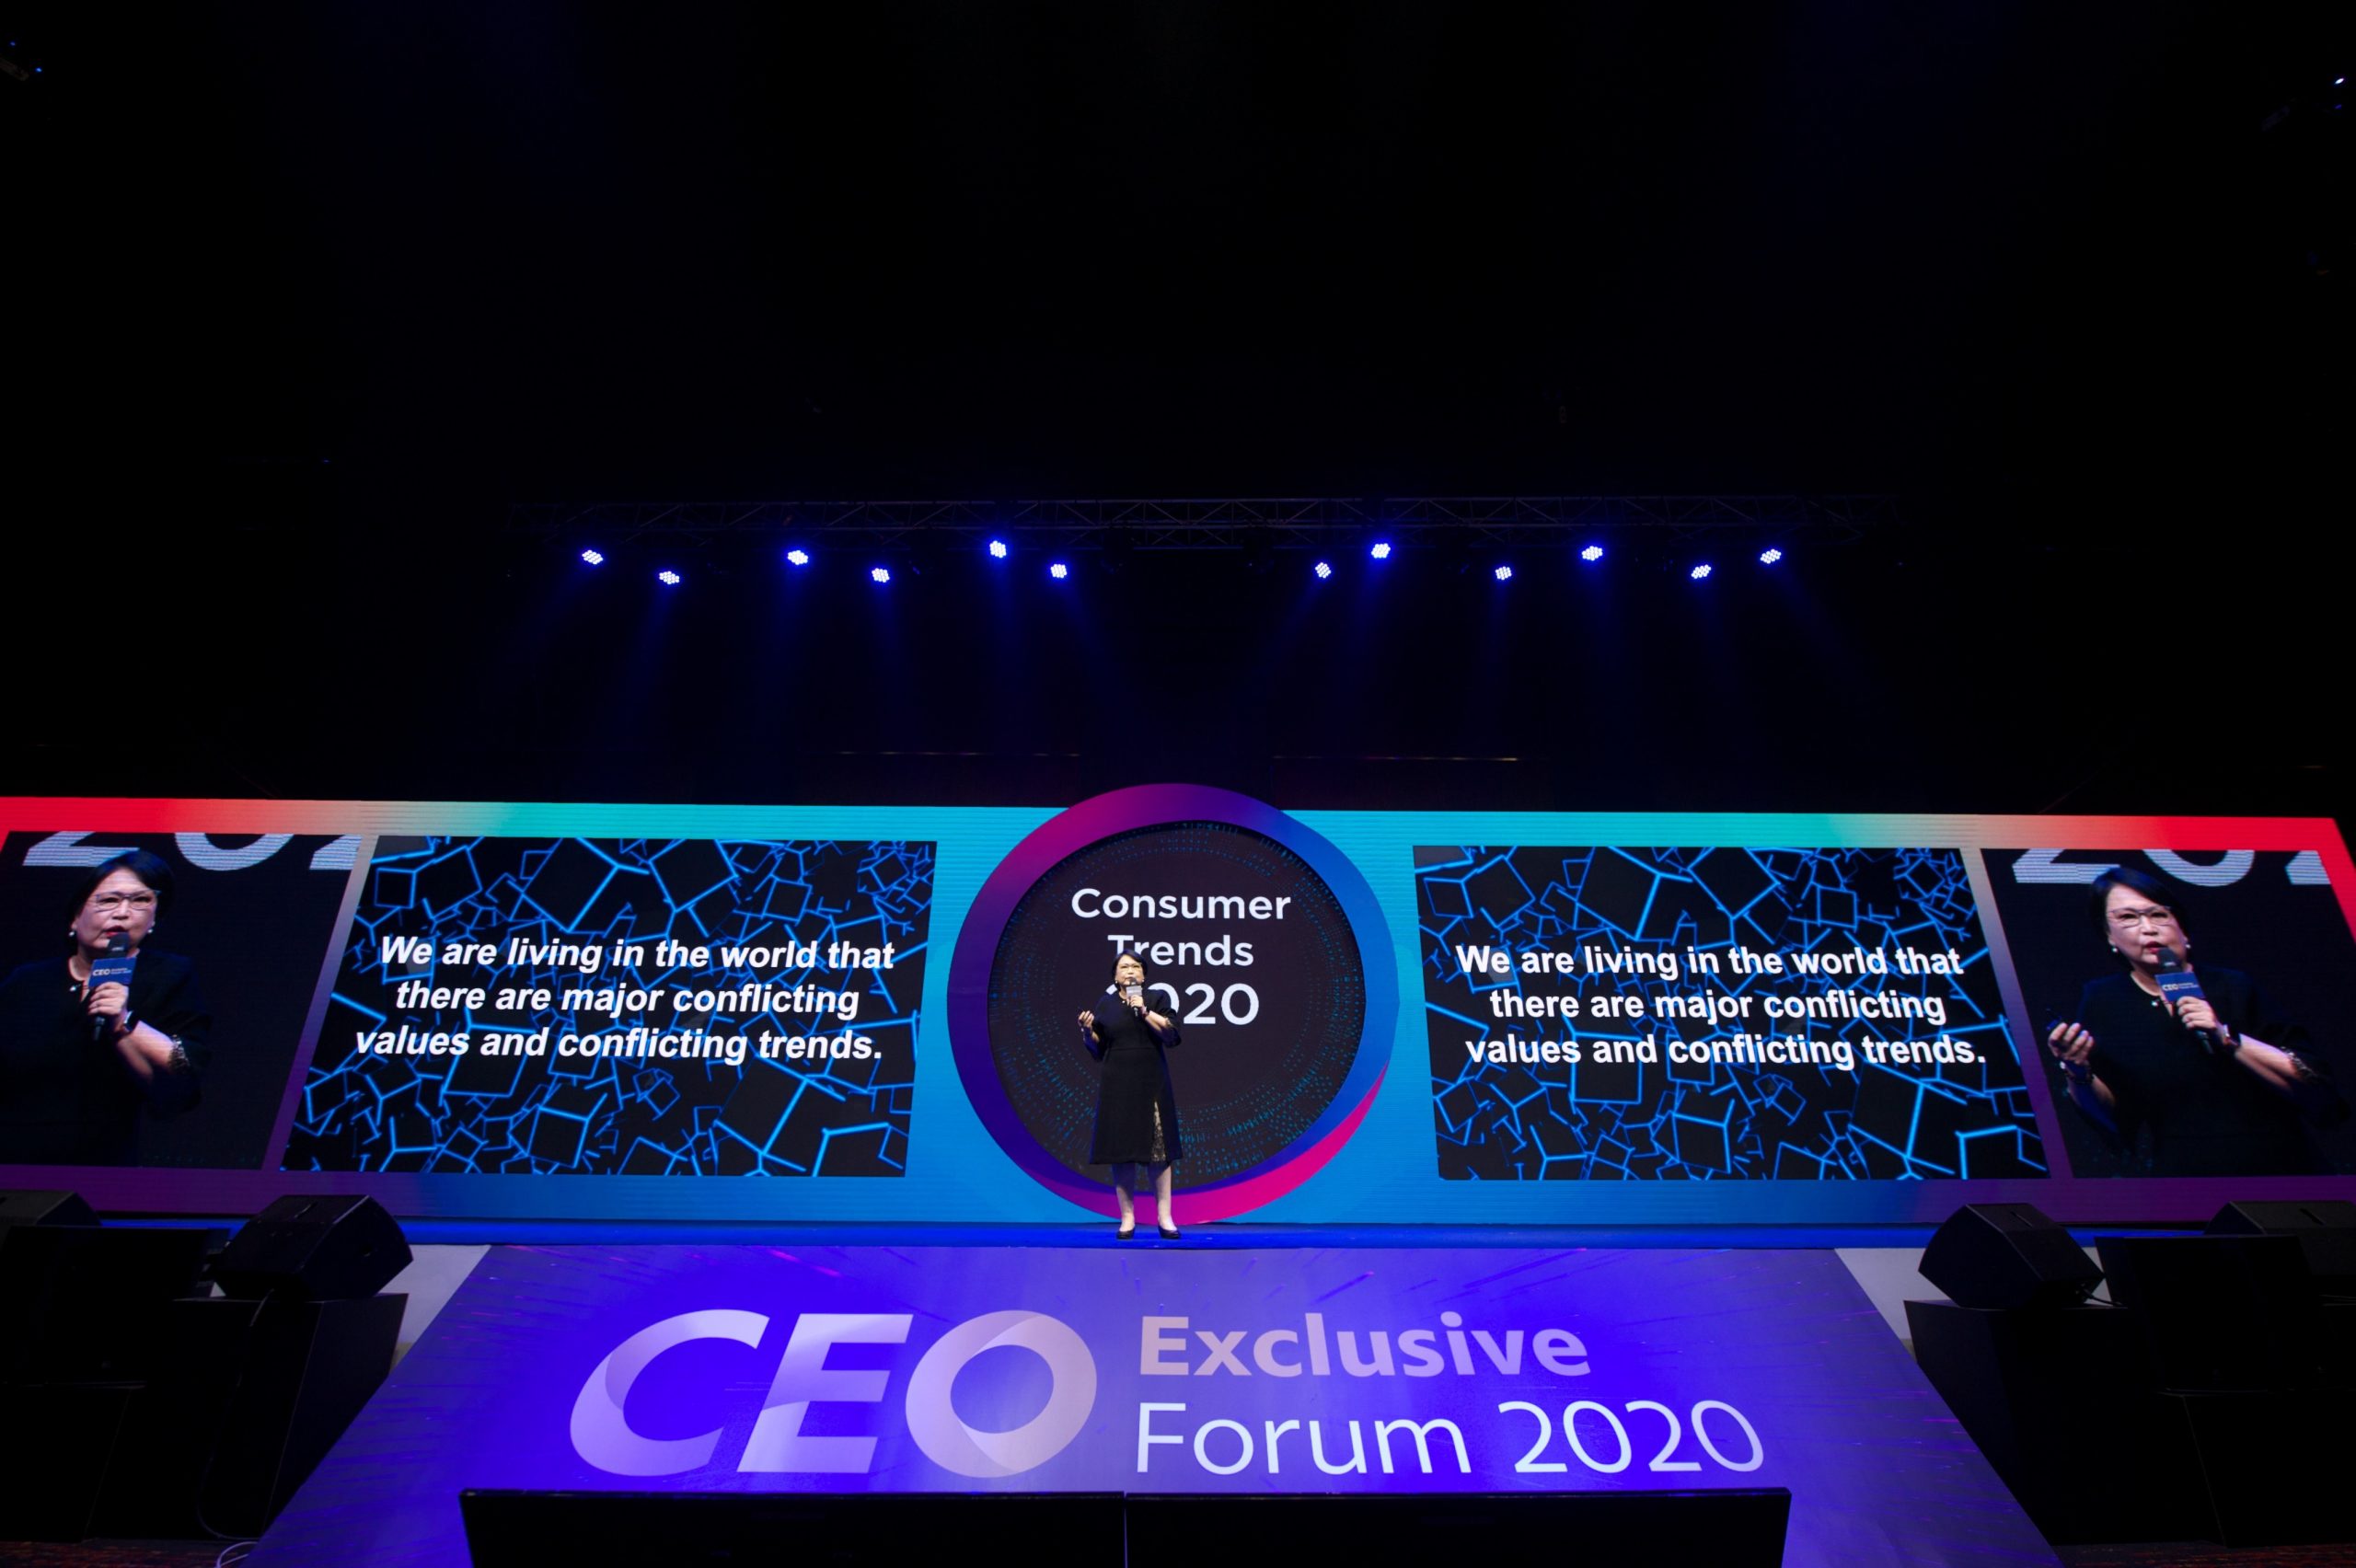 ถอดสมการ 7 เทรนด์หมุนโลก พาแบรนด์ ผูกใจ ผู้บริโภคยุคดิจิทัล ในงานสัมมนาประจำปี CEO Exclusive Forum 2020 โดย เอสซีจี แพคเกจจิ้ง